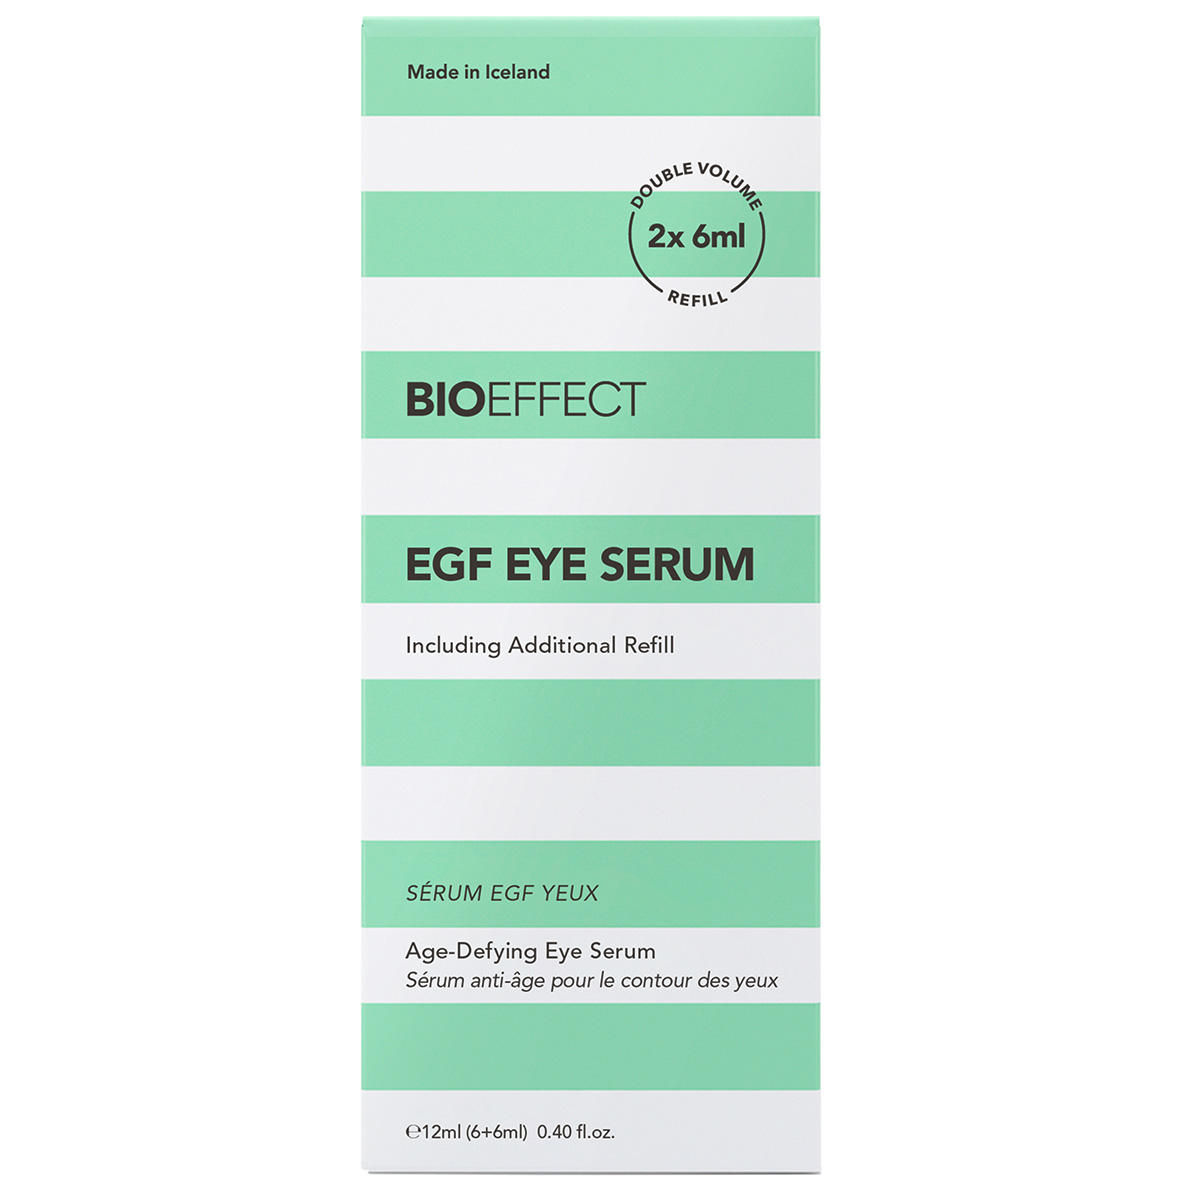 BIOEFFECT EGF EYE SERUM + REFILL 6 ml + 6 ml - 3